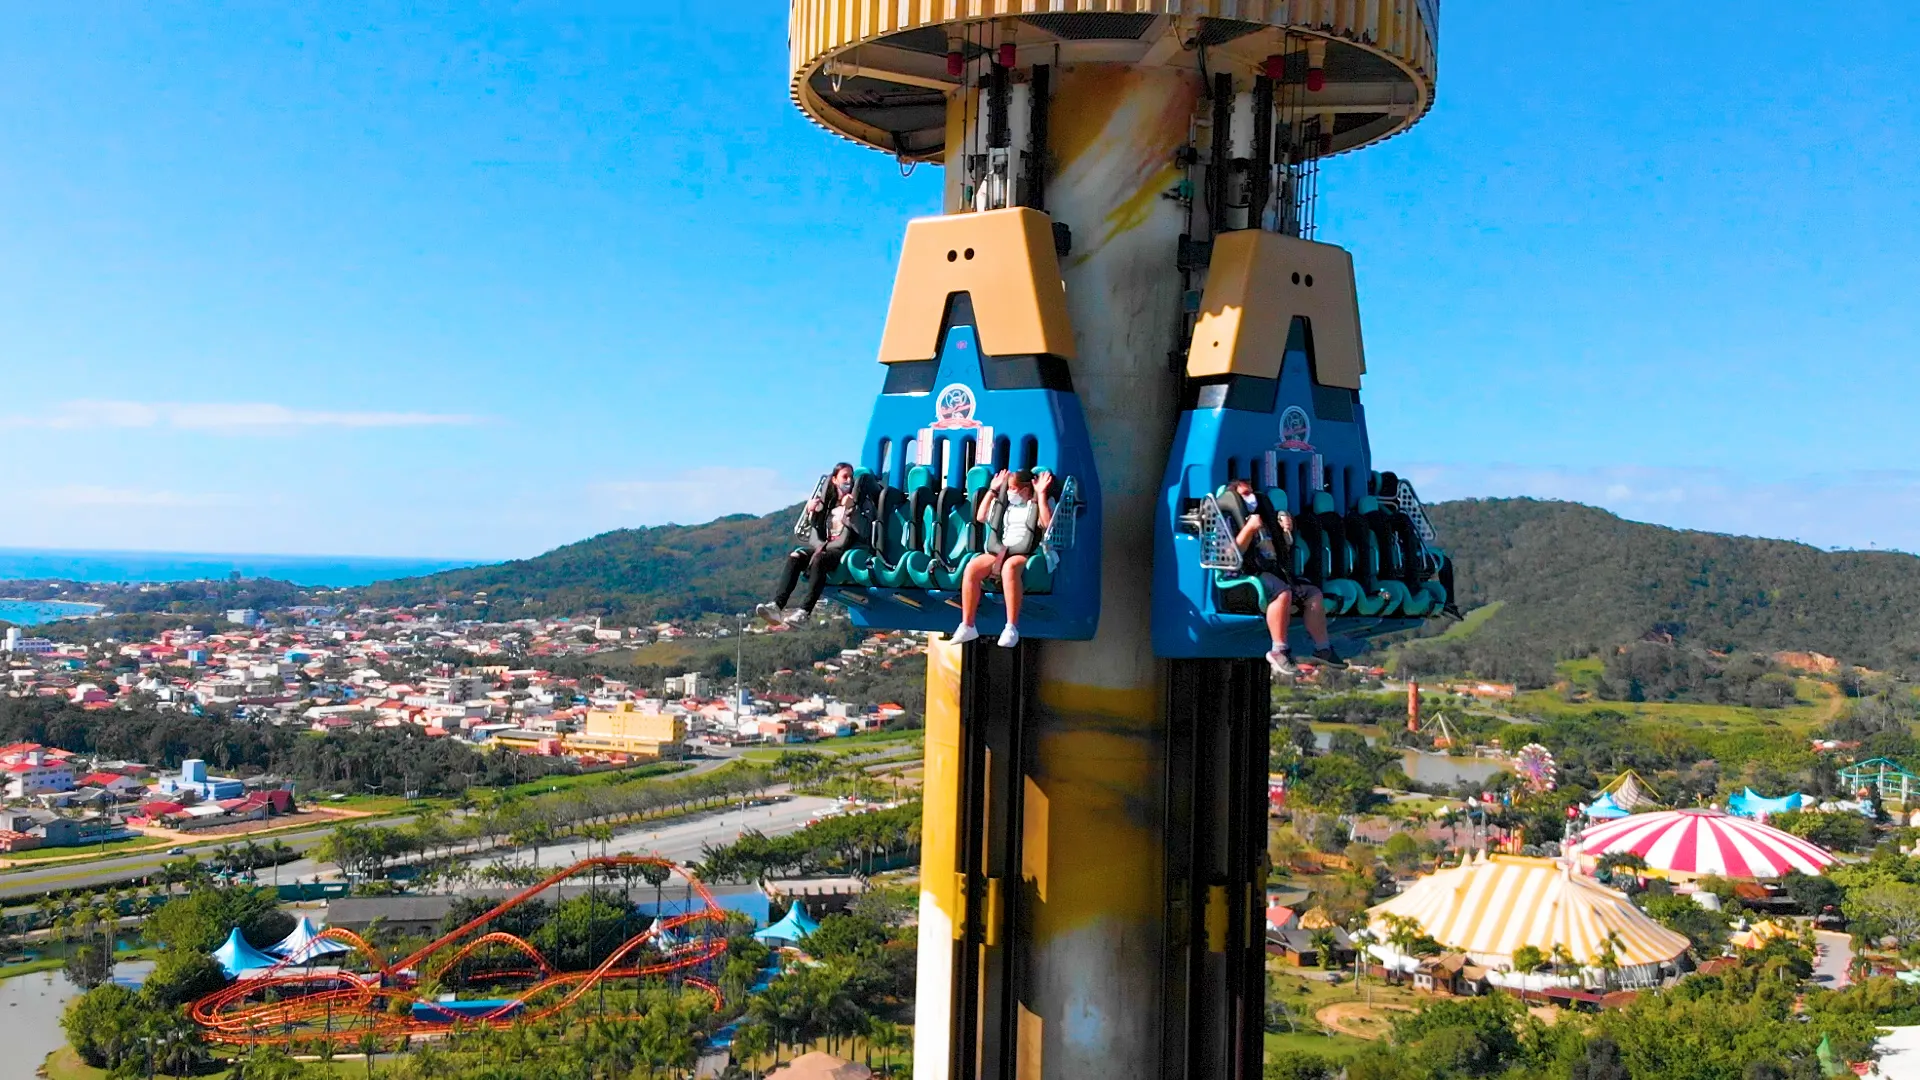 Visite Santa Catarina - Big Tower é uma das atrações do Parque Beto Carrero  World. Com seus 100 metros de altura sua velocidade pode chegar até 120km  /h.